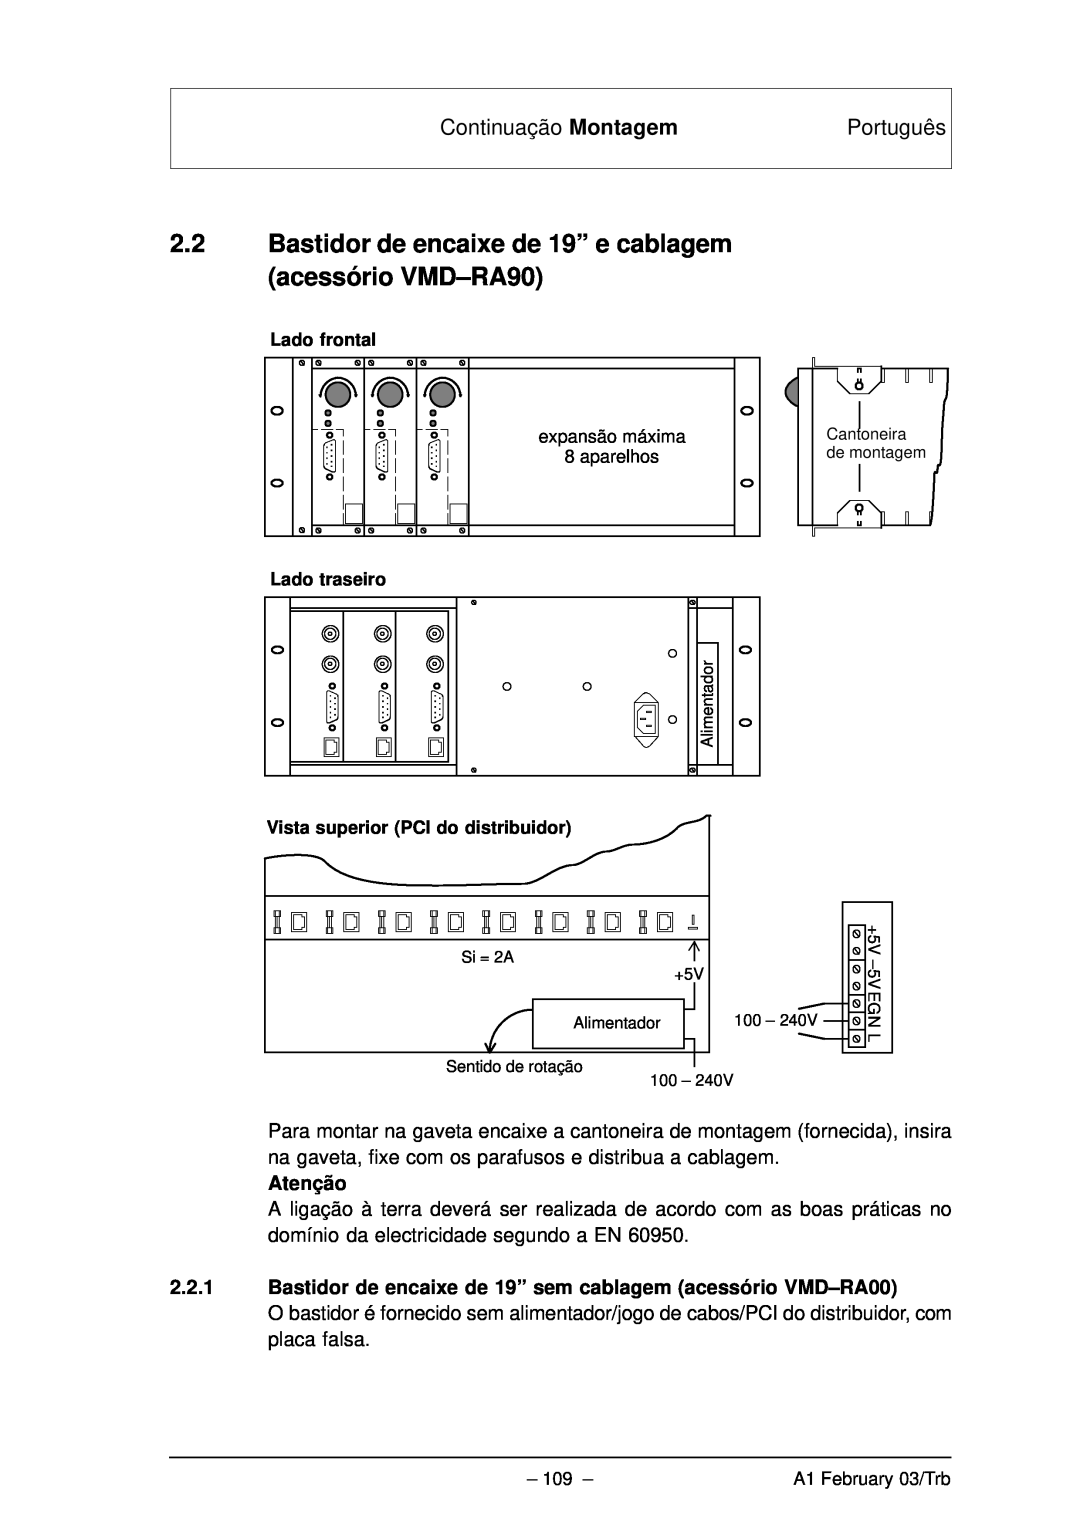 Bosch Appliances VMD01 M50 PAL, VMD01 M60 NTSC manual Continuação Montagem, Português, Atenção, Lado frontal, Lado traseiro 